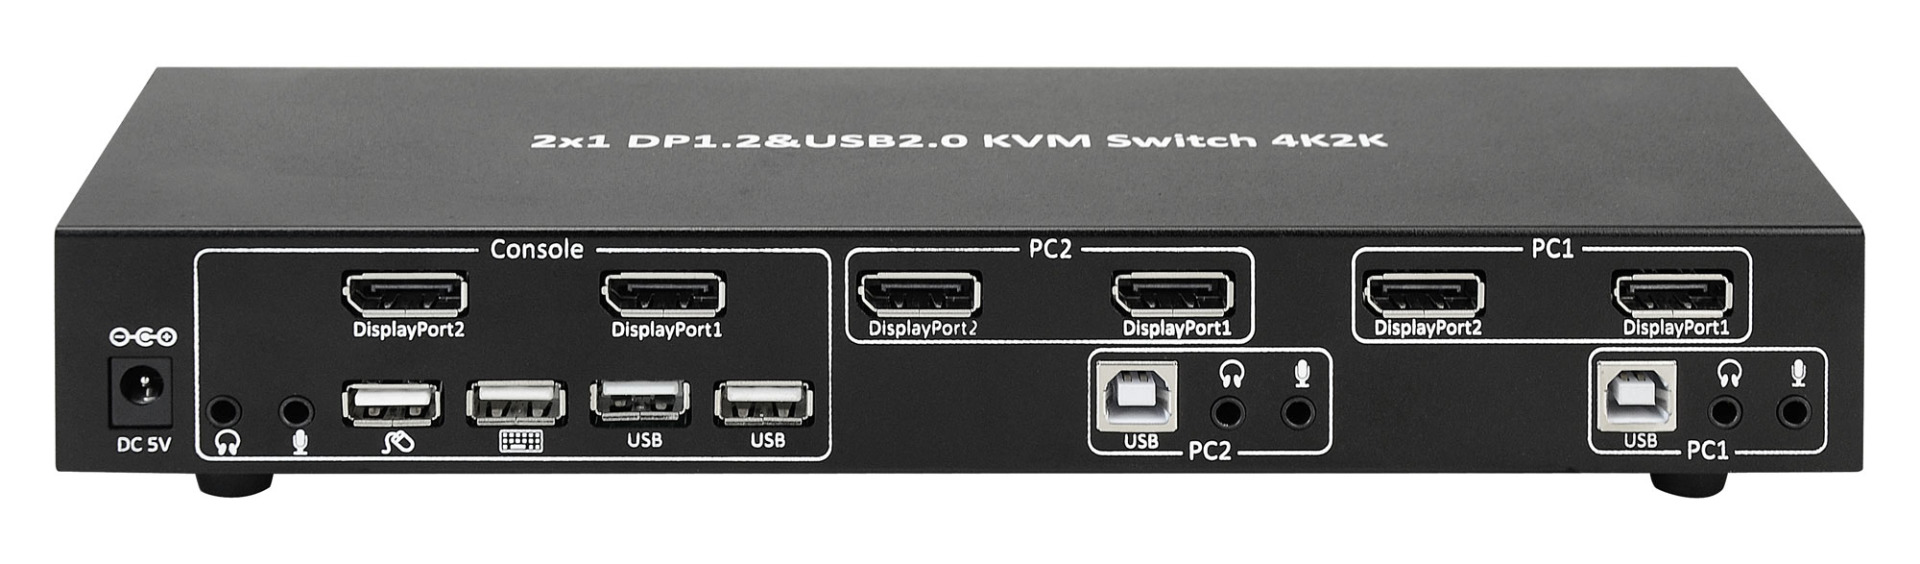 KVM-Switch DisplayPort 1.2, 2-Port, Dual-View